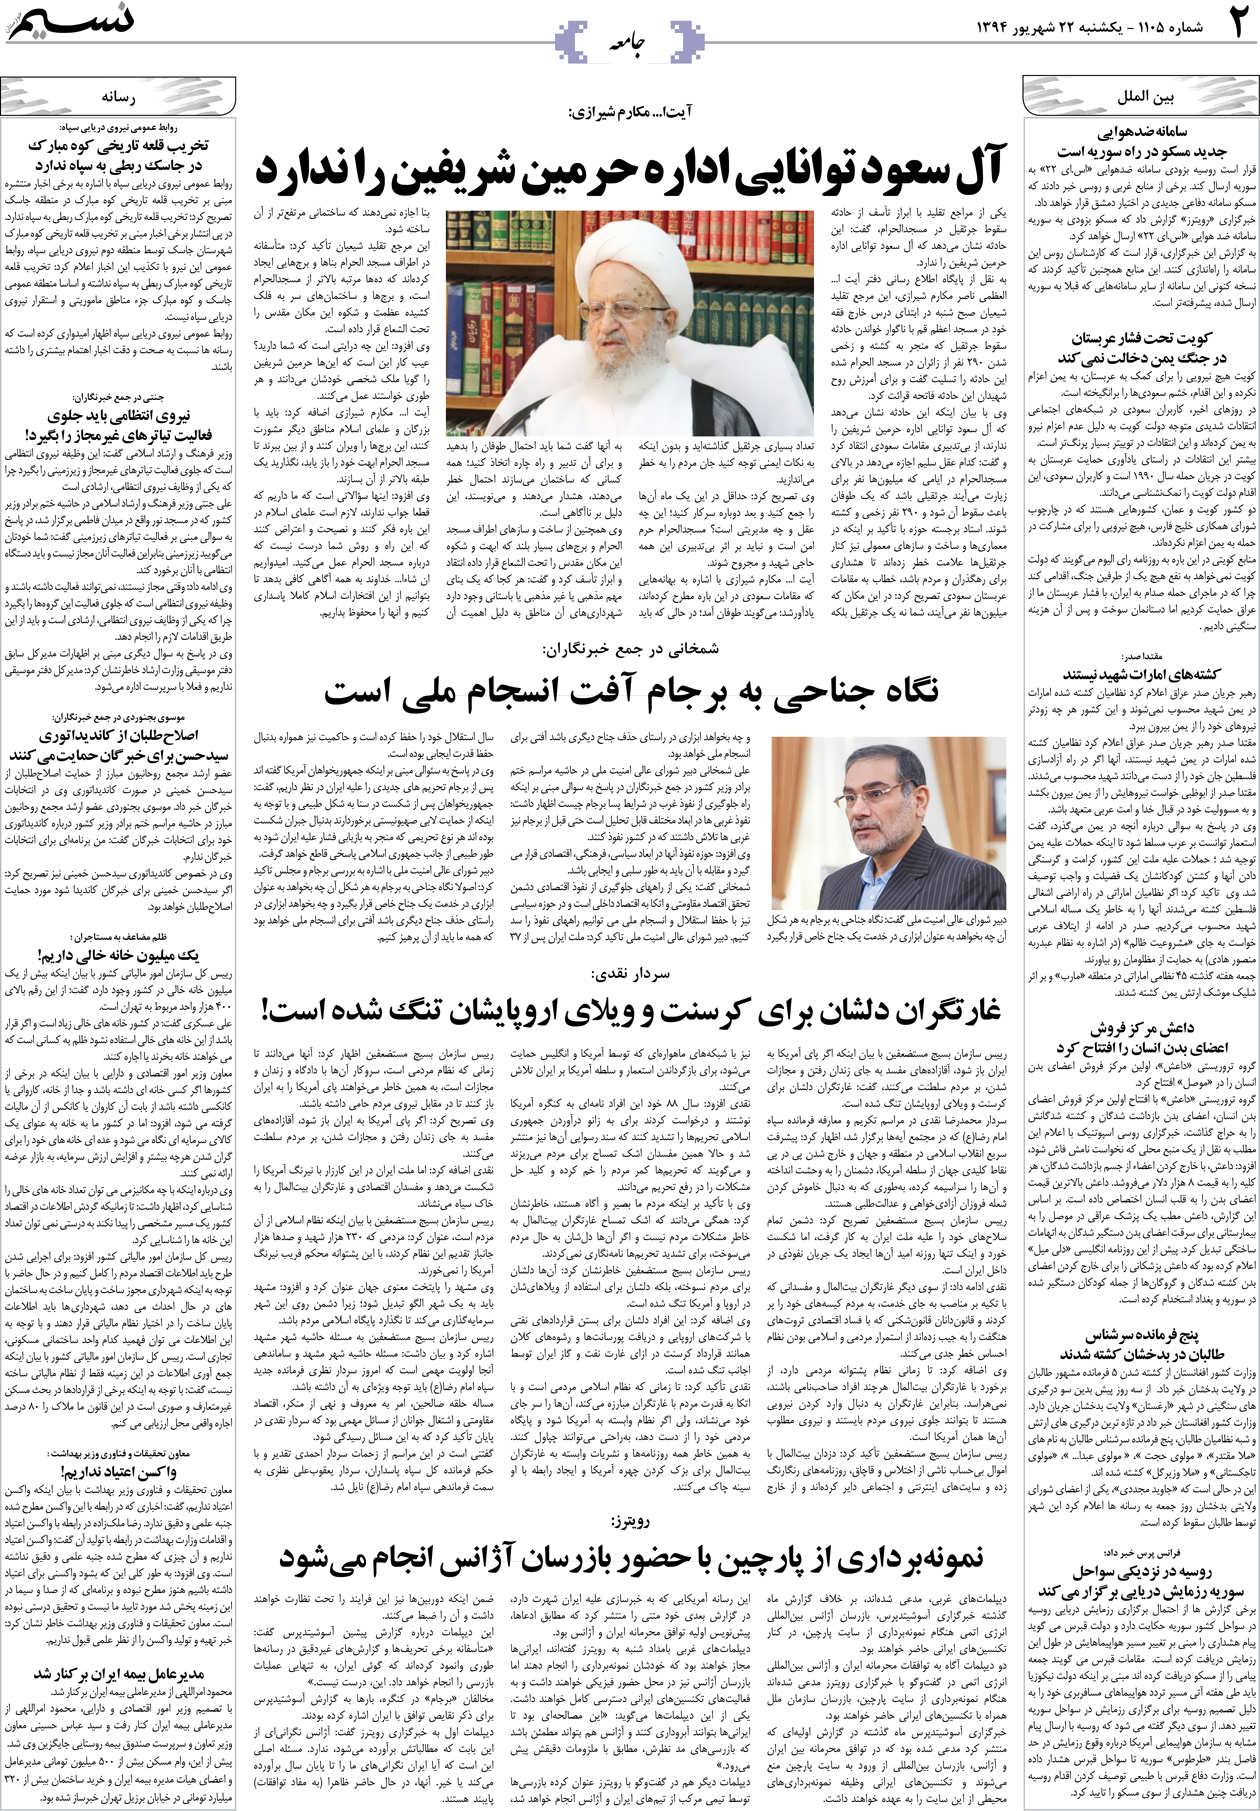 صفحه جامعه روزنامه نسیم شماره 1105